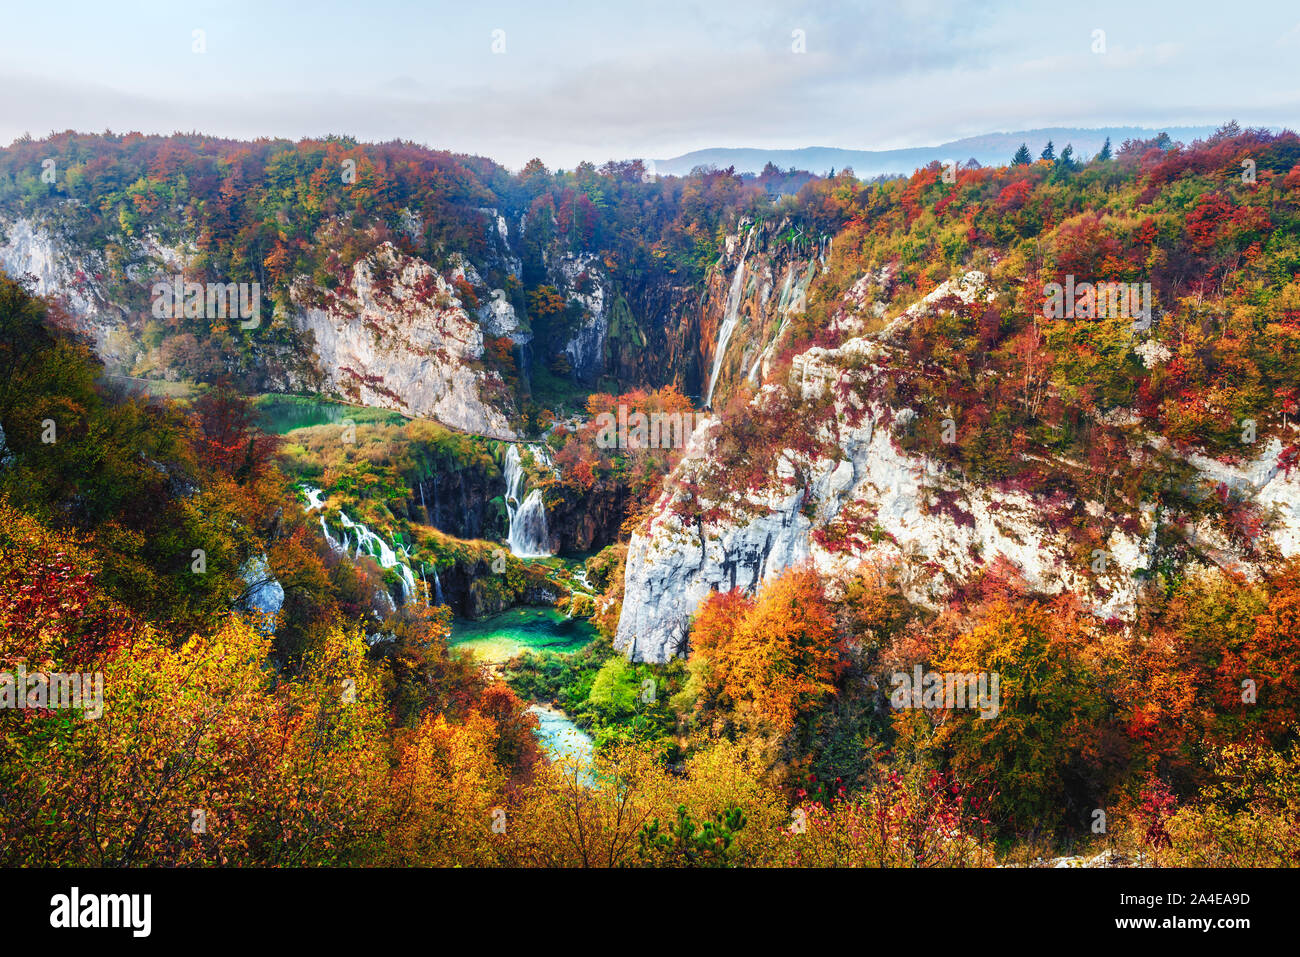 Vista aerea su incredibili Cascate del Parco Nazionale dei laghi di Plitvice. Orange autunno foresta sul background. Il parco nazionale di Plitvice, Croazia. Fotografia di paesaggi Foto Stock